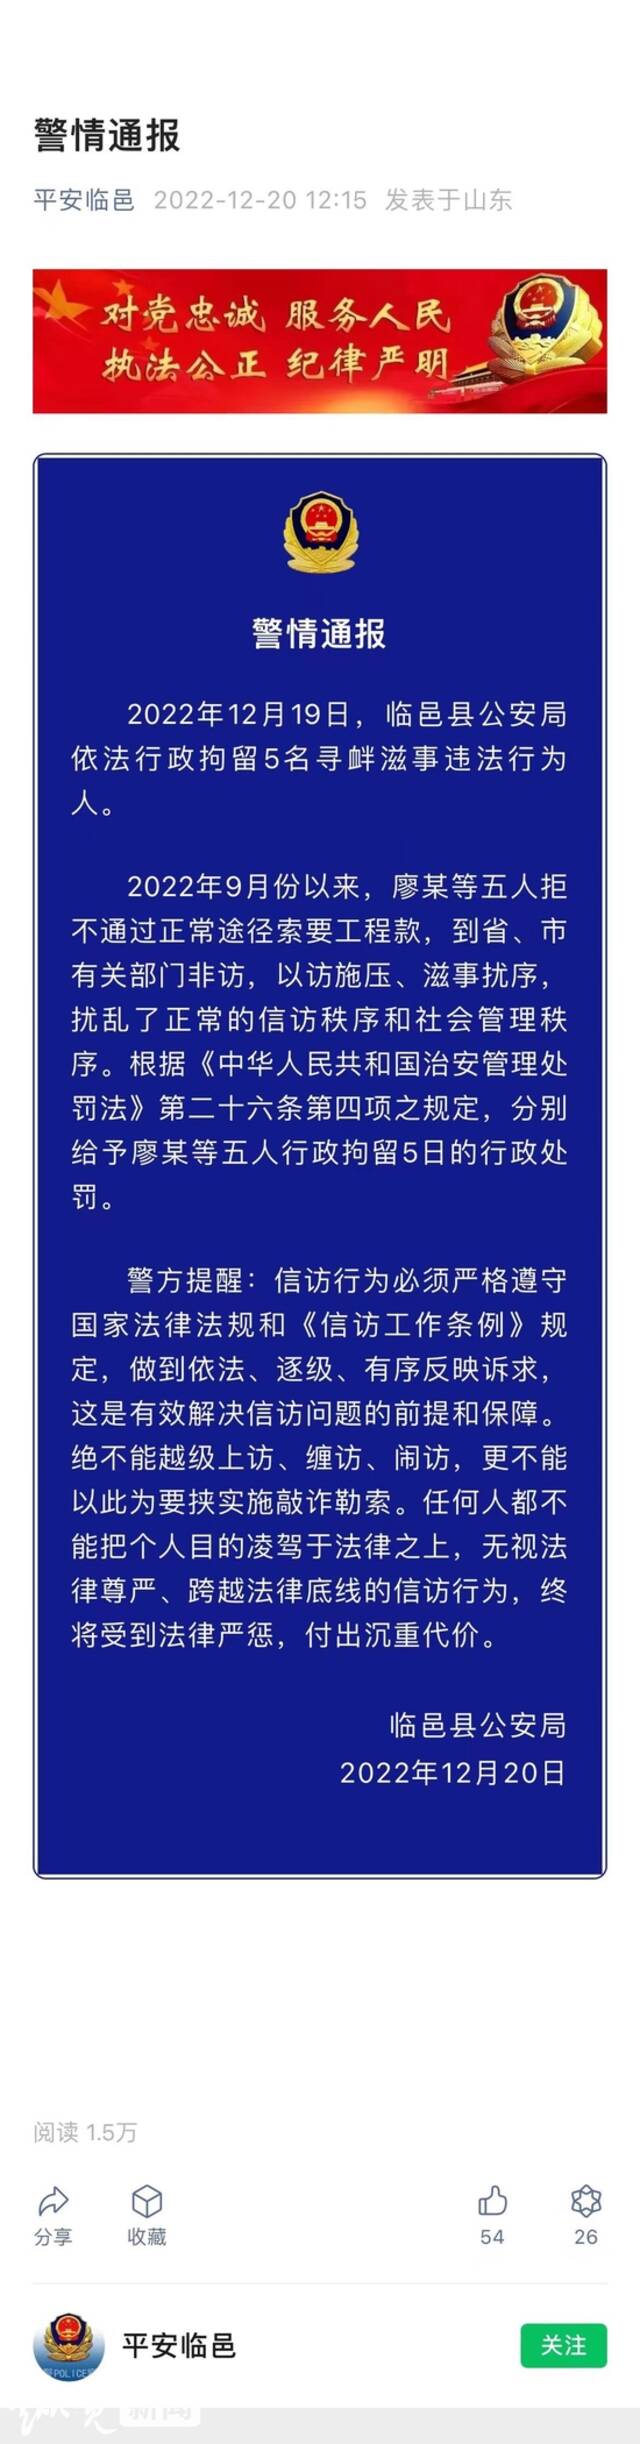 山东临邑县回复“5人非访索要工程款被行拘”：警情通报确有不妥之处，将会再次发布通报